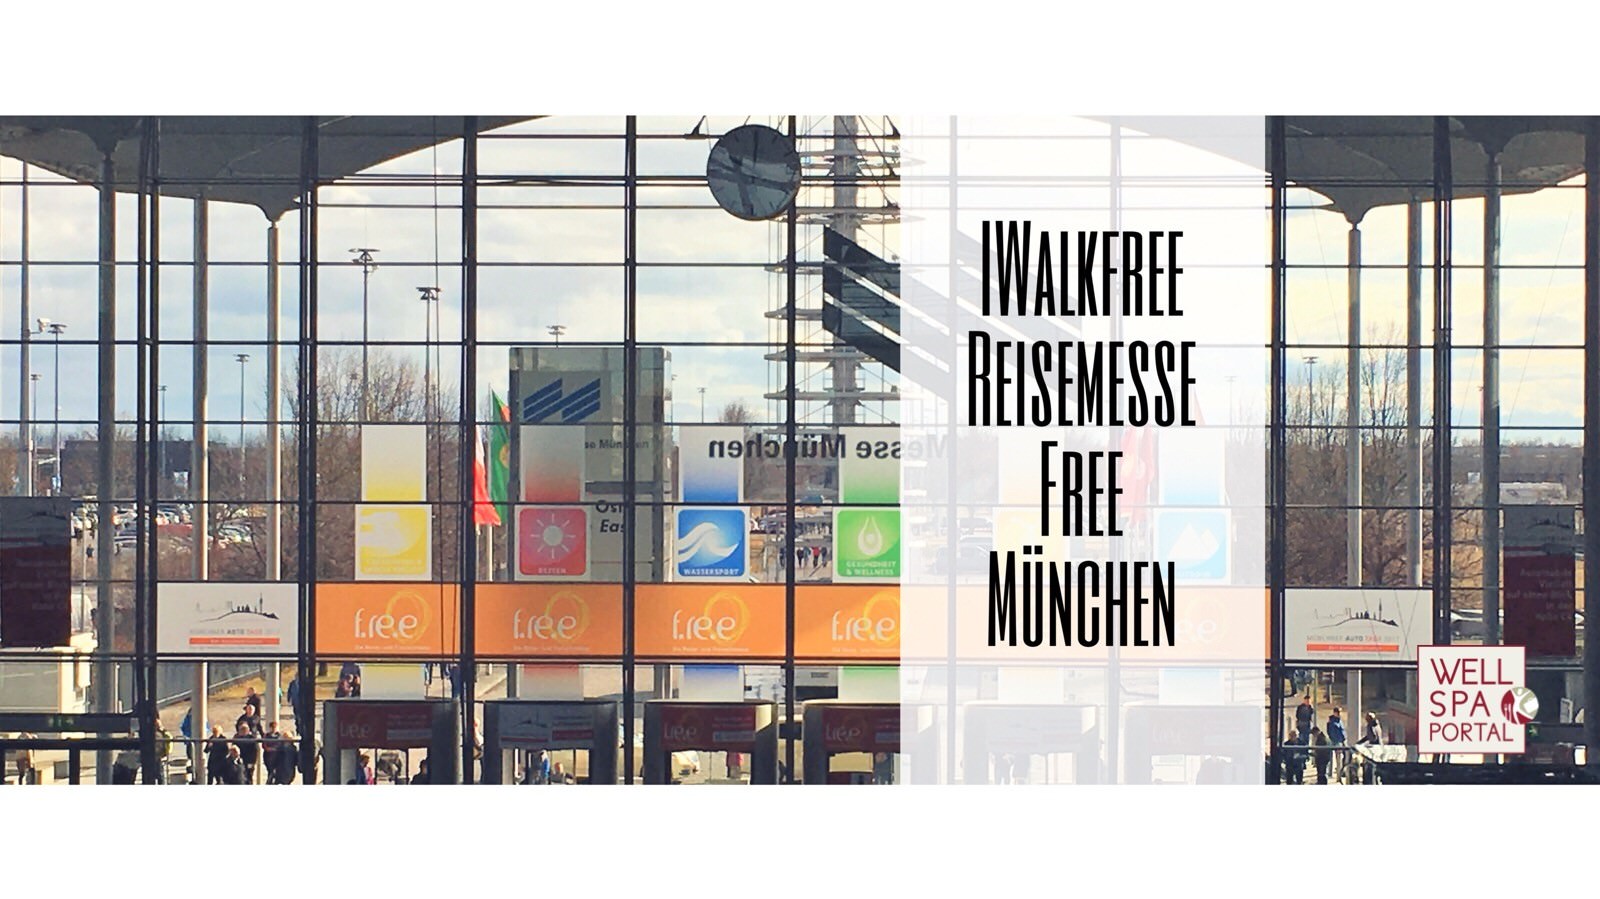 IWalkFree auf der Reisemesse f.re.e in München